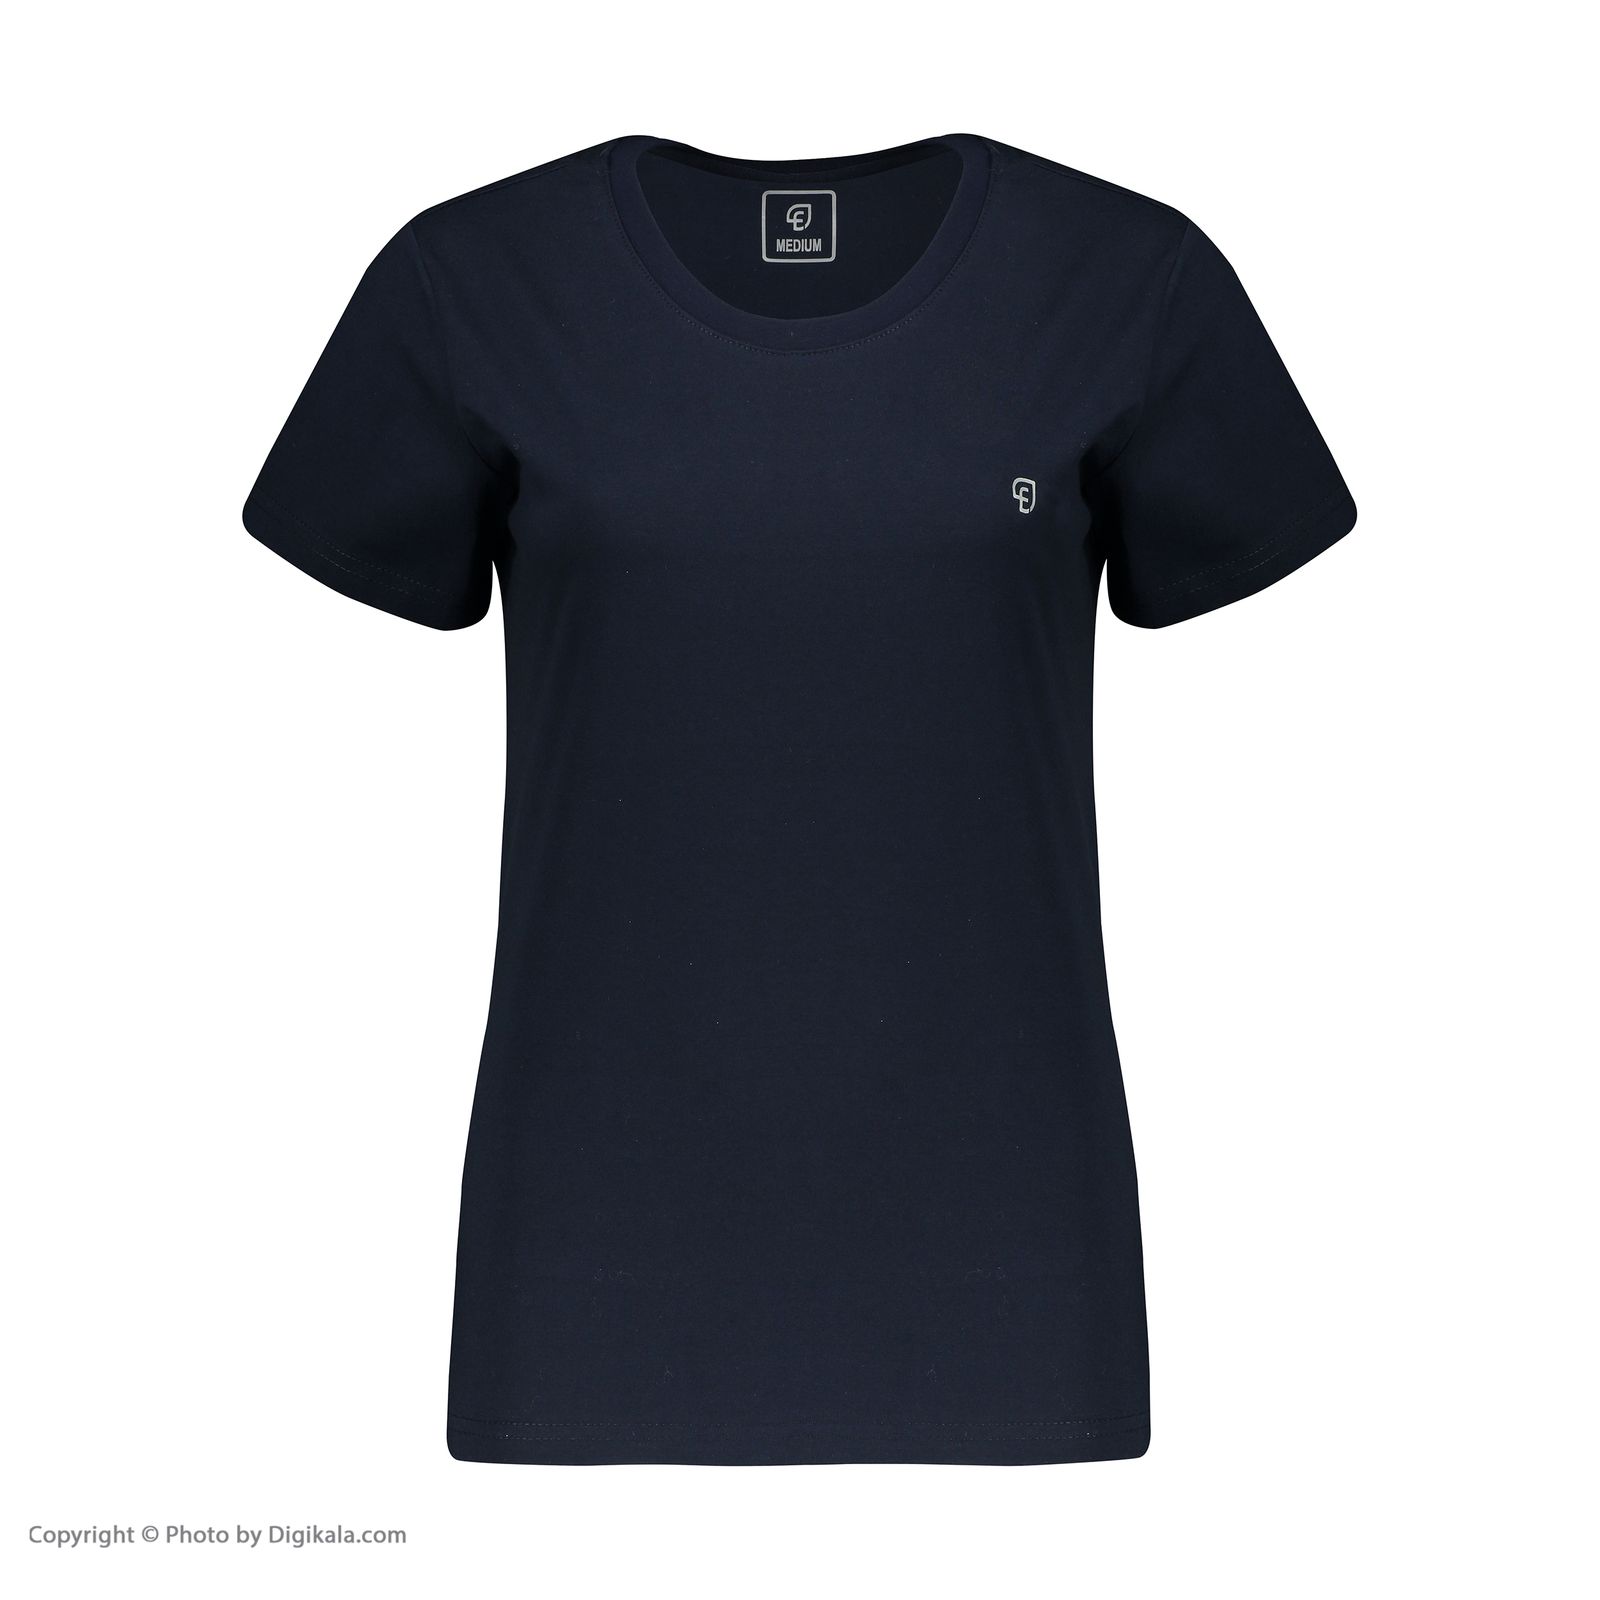 تی شرت آستین کوتاه زنانه الوج مدل W07188-400 -  - 2